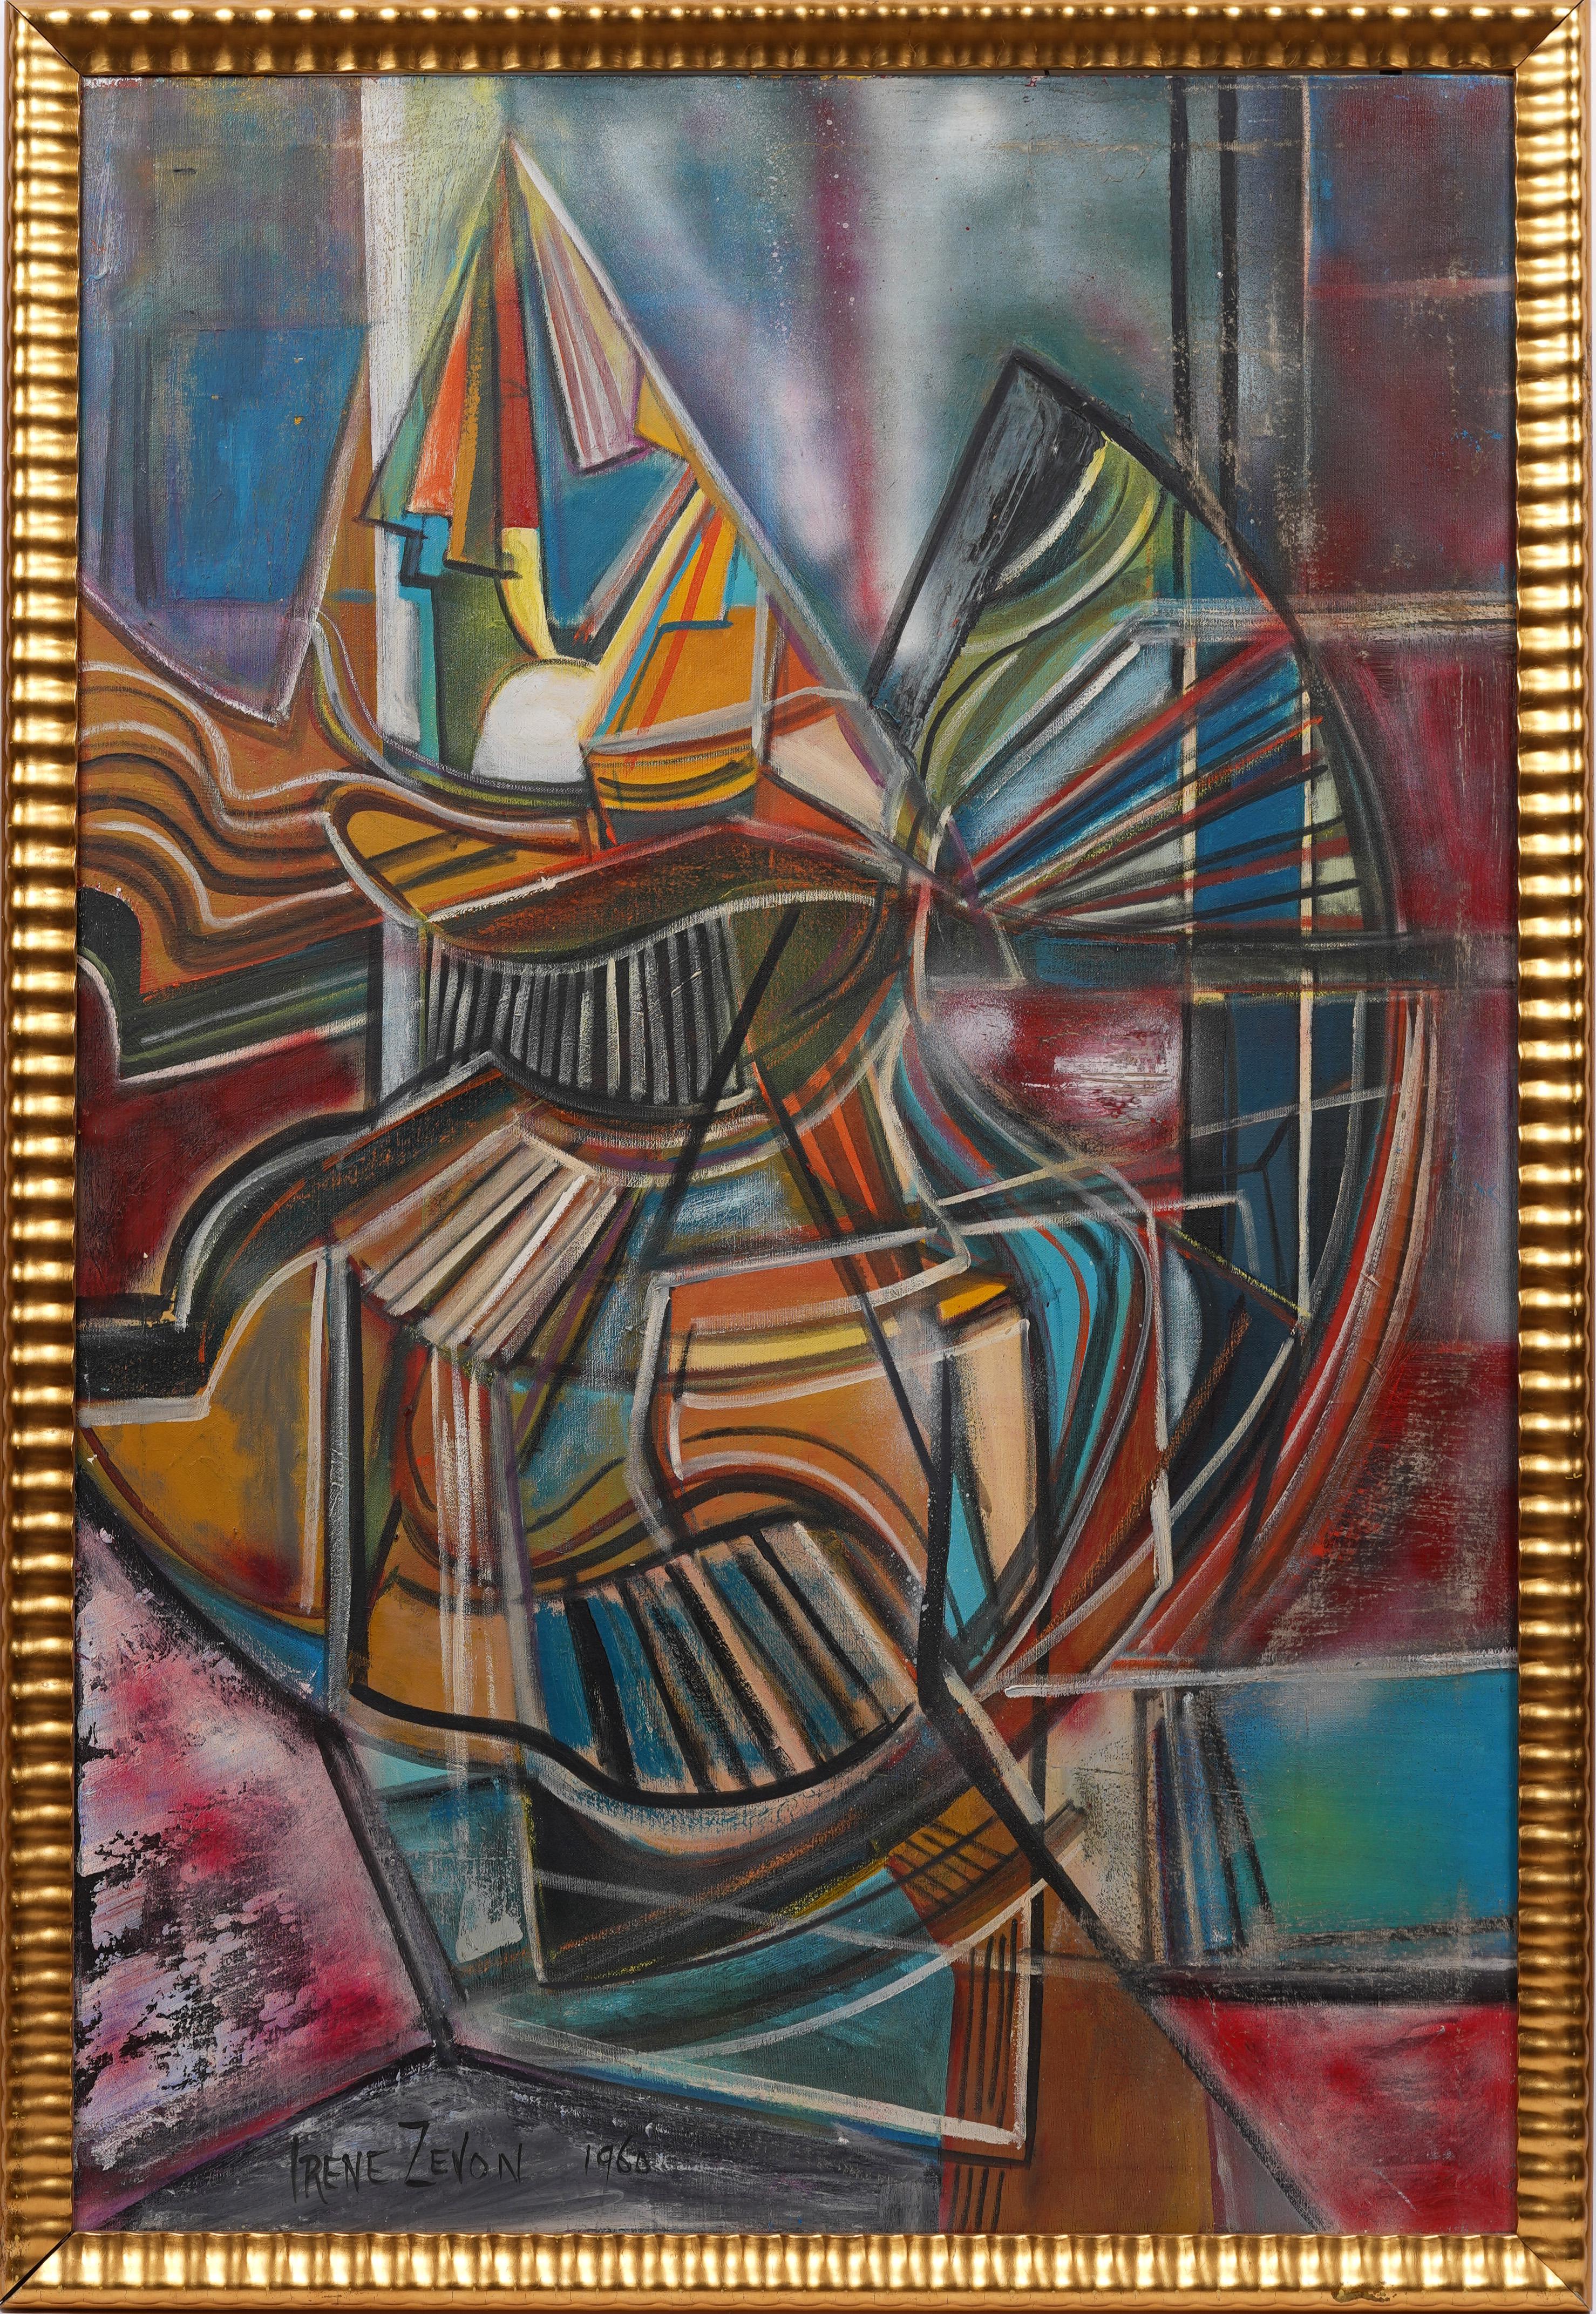 Abstract Painting Irene Zevon - Ancienne peinture à l'huile abstraite expressionniste abstraite américaine féminine moderniste encadrée